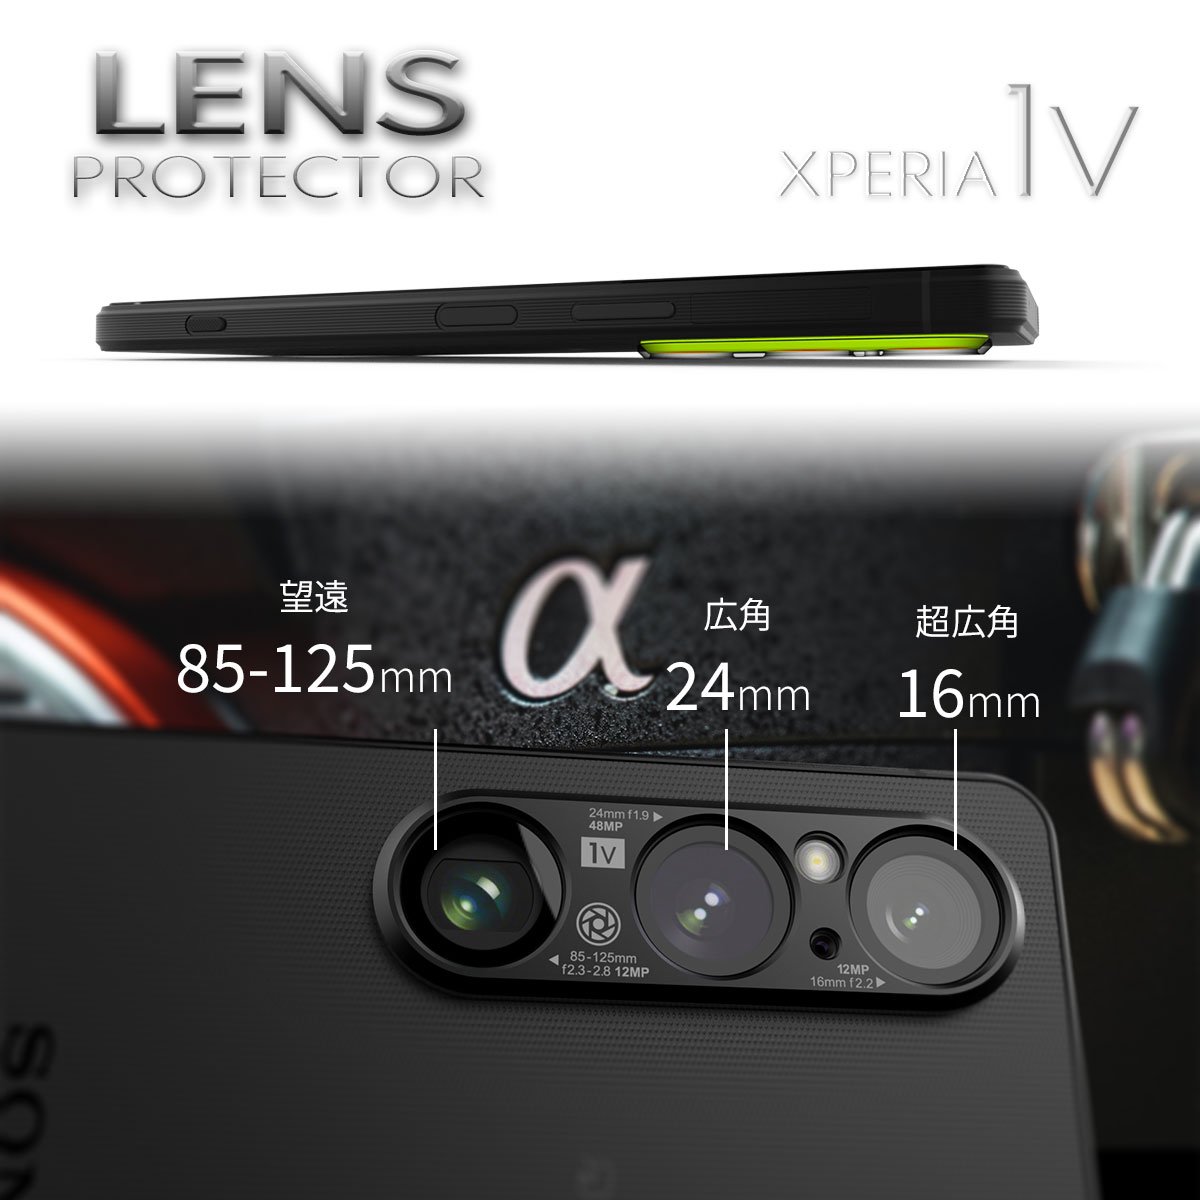 レンズプロテクター 【XPERIA 1 V専用】 背面側カメラレンズ表面保護アルミフルビレットカバー